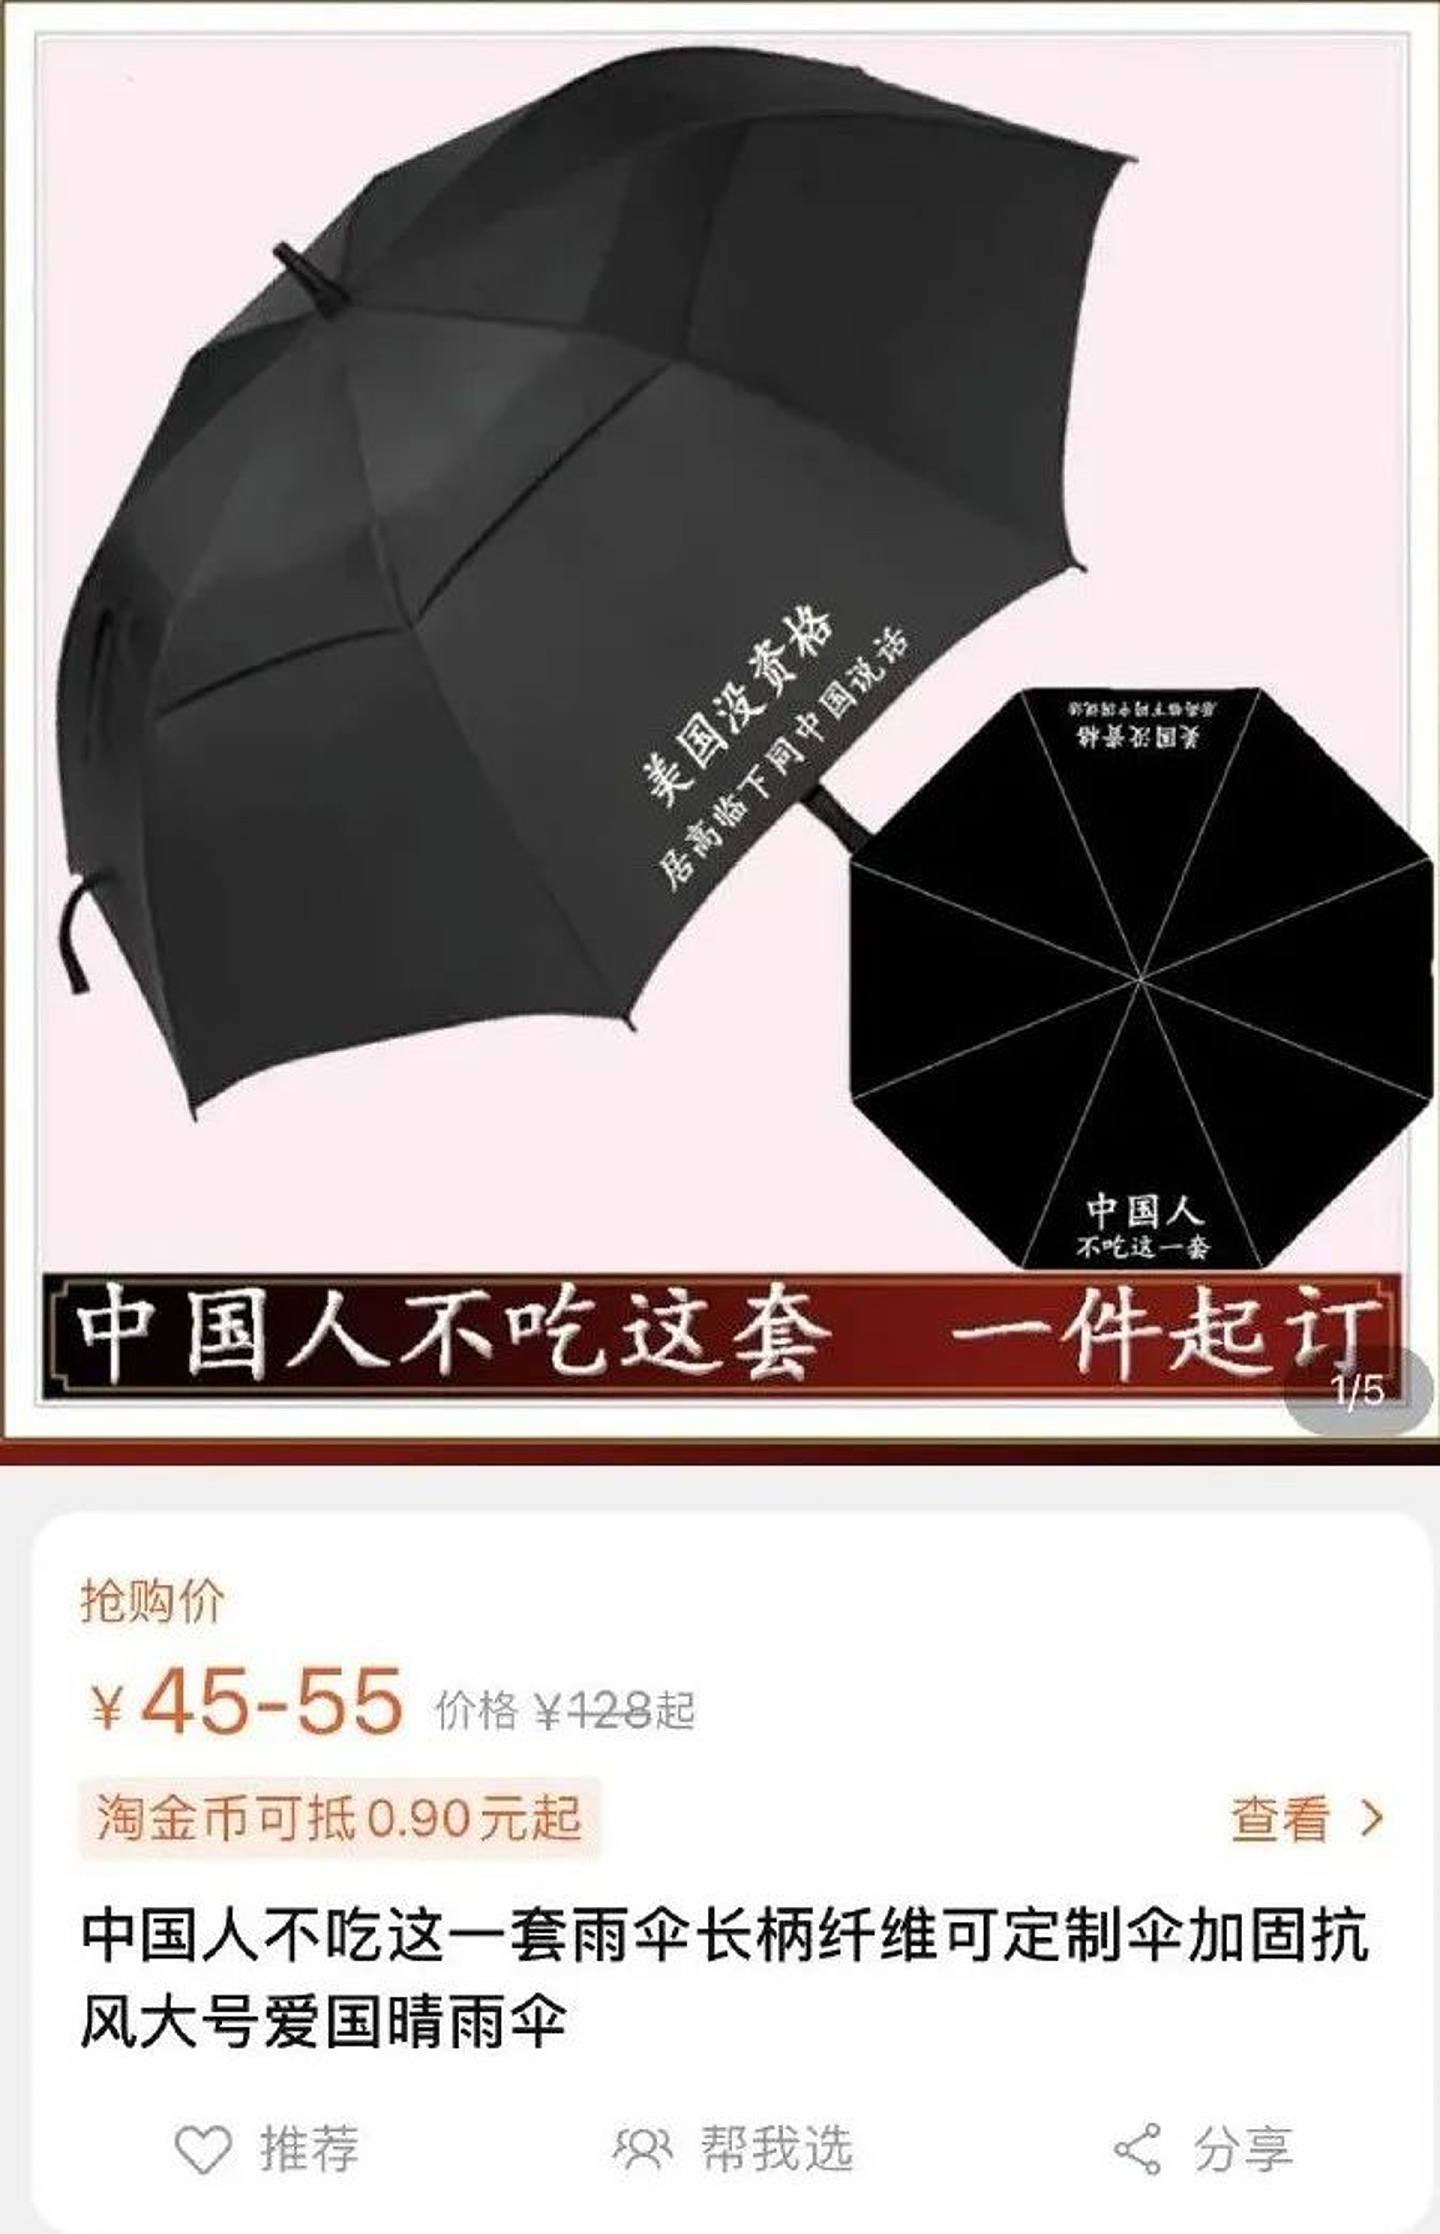 「中国人不吃这一套」系列雨伞。 （网络图片）